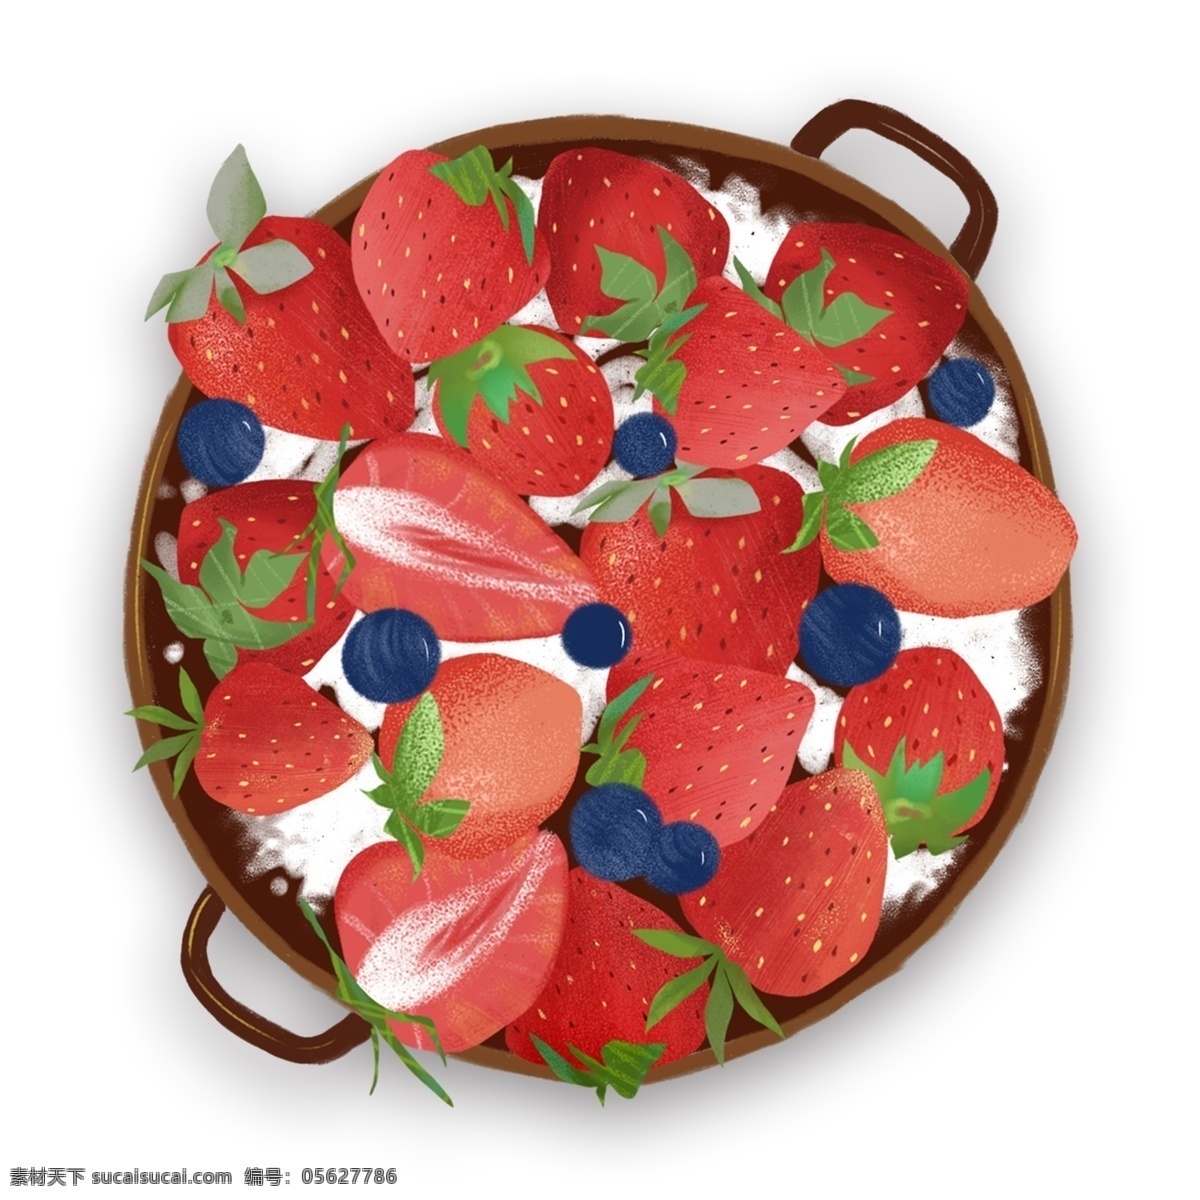 美味 草莓 沙拉 装饰 元素 装饰元素 手绘 蓝莓 食物 水果